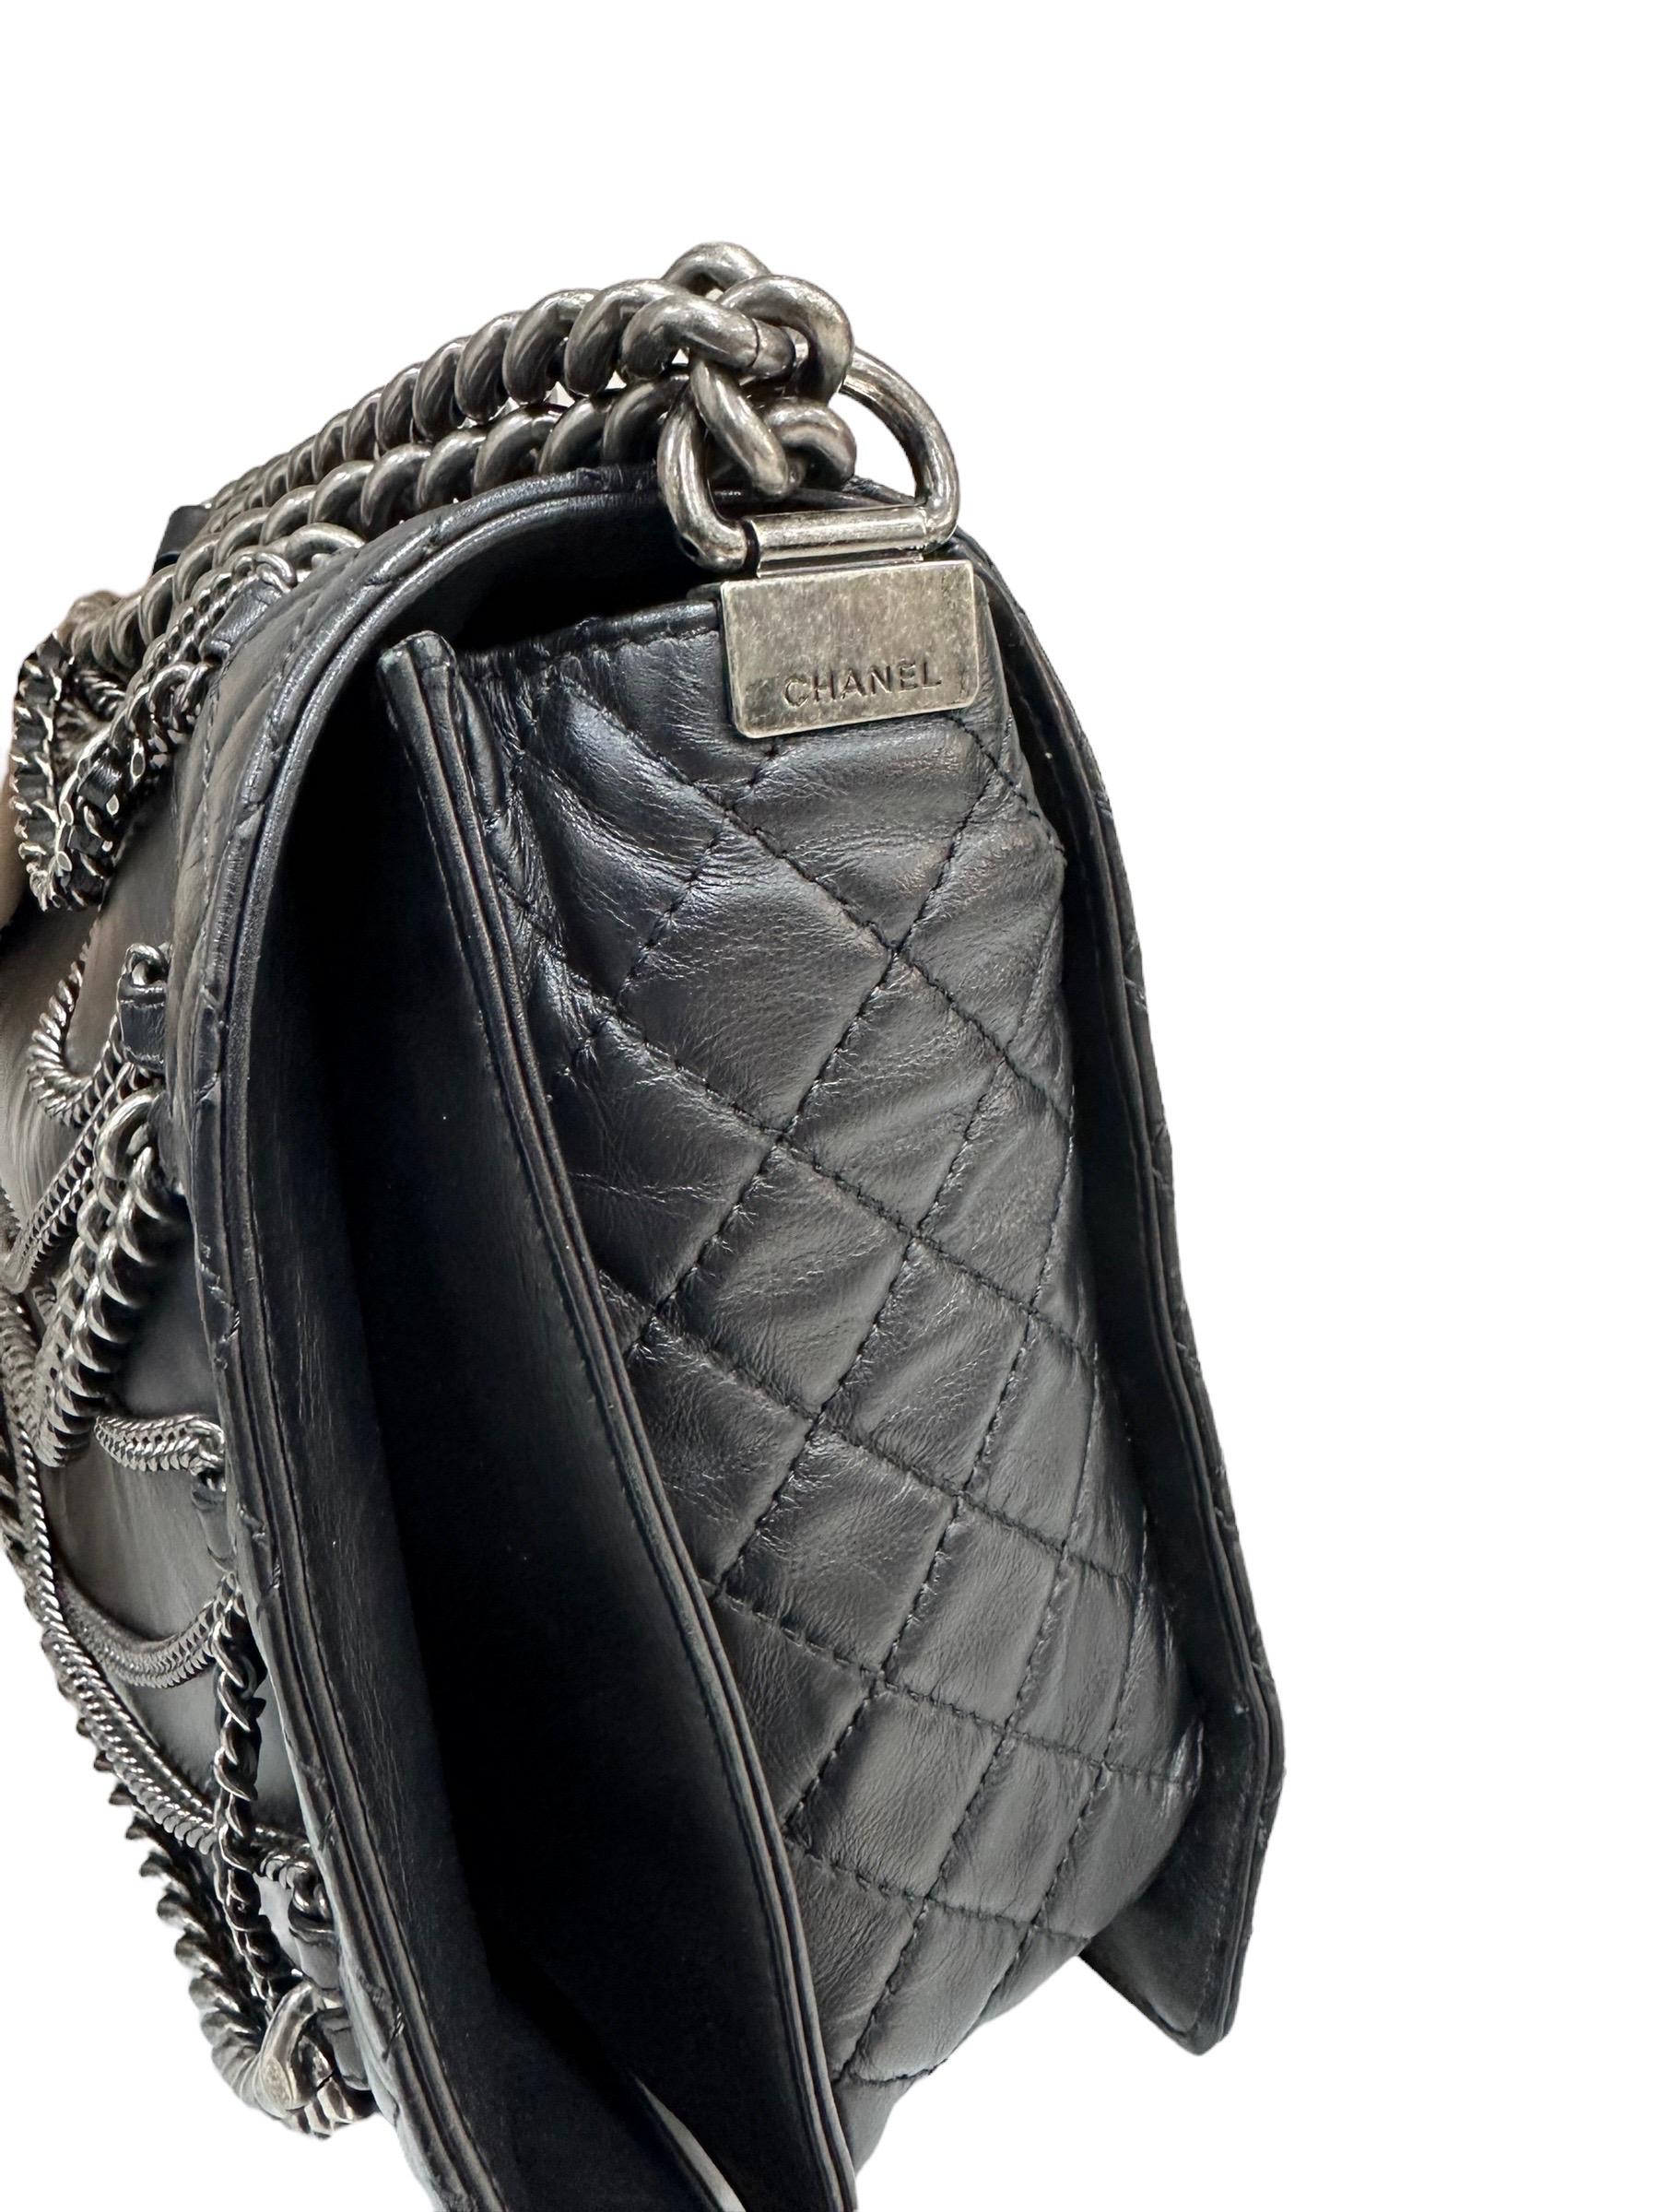 2014 Chanel Boy XL Limited Edition Shoulder Bag Multi Chains 3